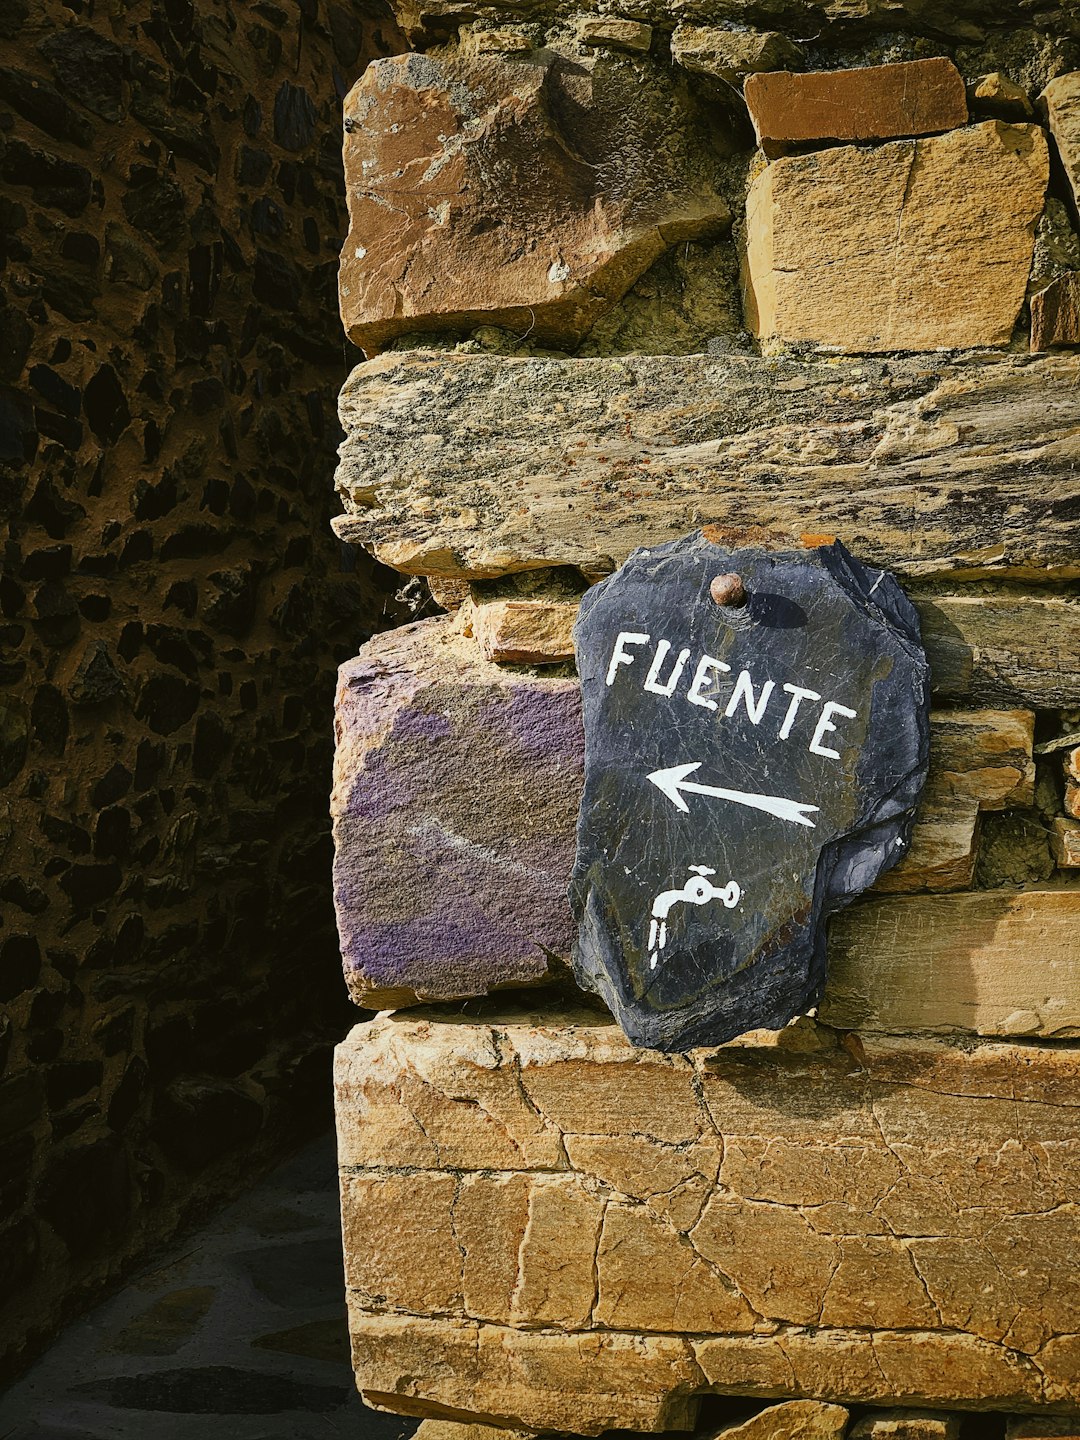 Fuente stone signage